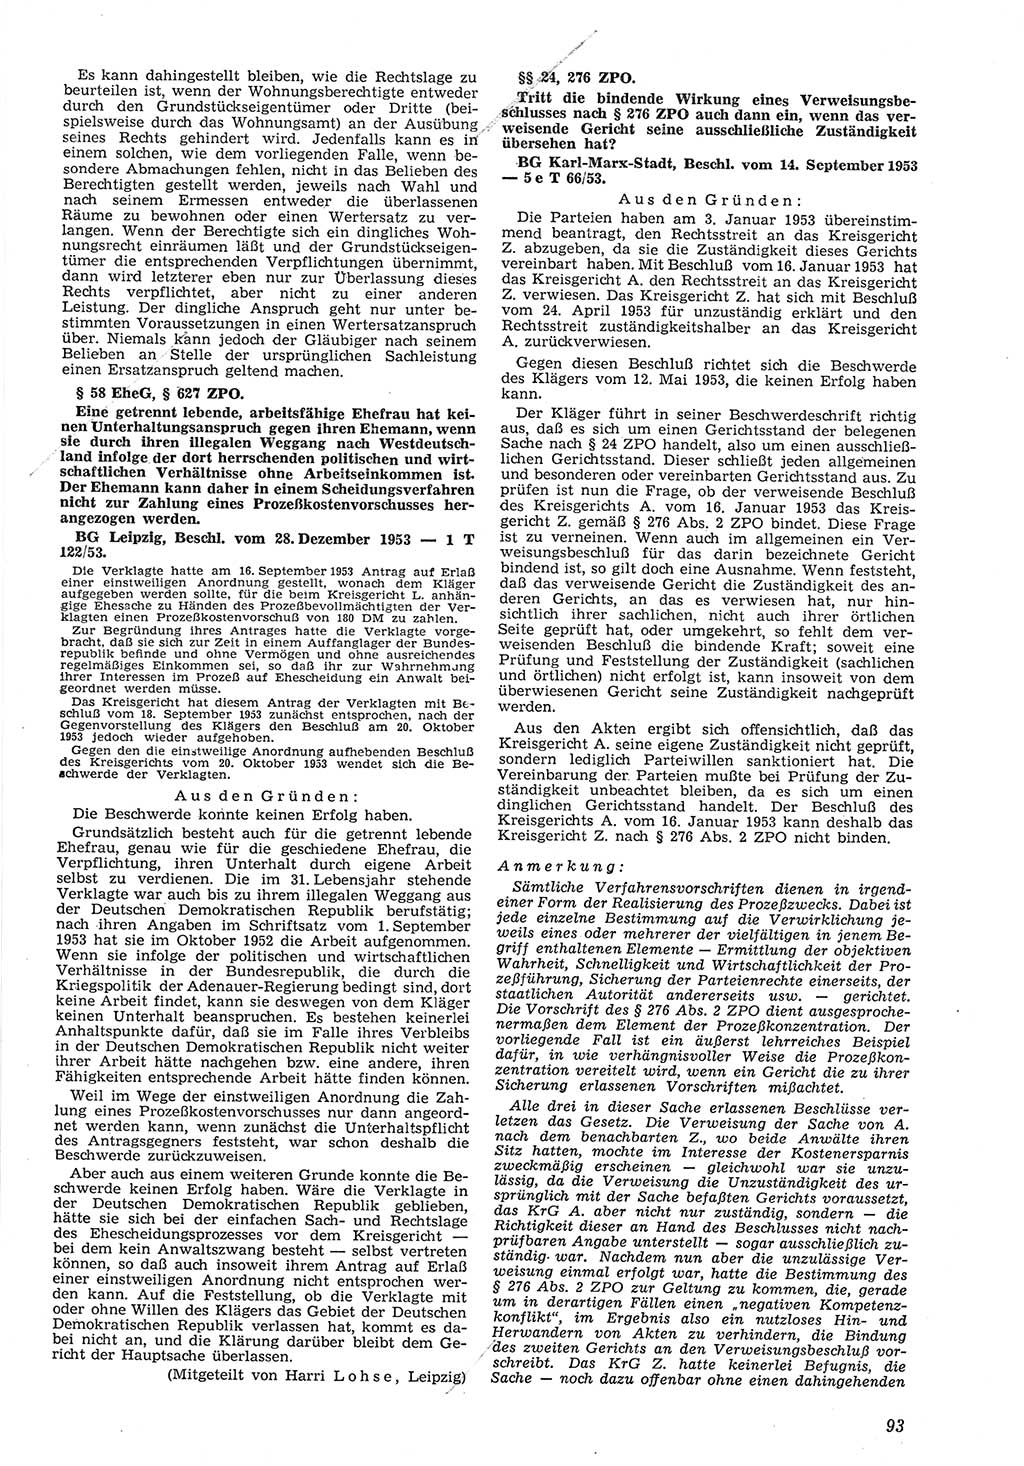 Neue Justiz (NJ), Zeitschrift für Recht und Rechtswissenschaft [Deutsche Demokratische Republik (DDR)], 8. Jahrgang 1954, Seite 93 (NJ DDR 1954, S. 93)